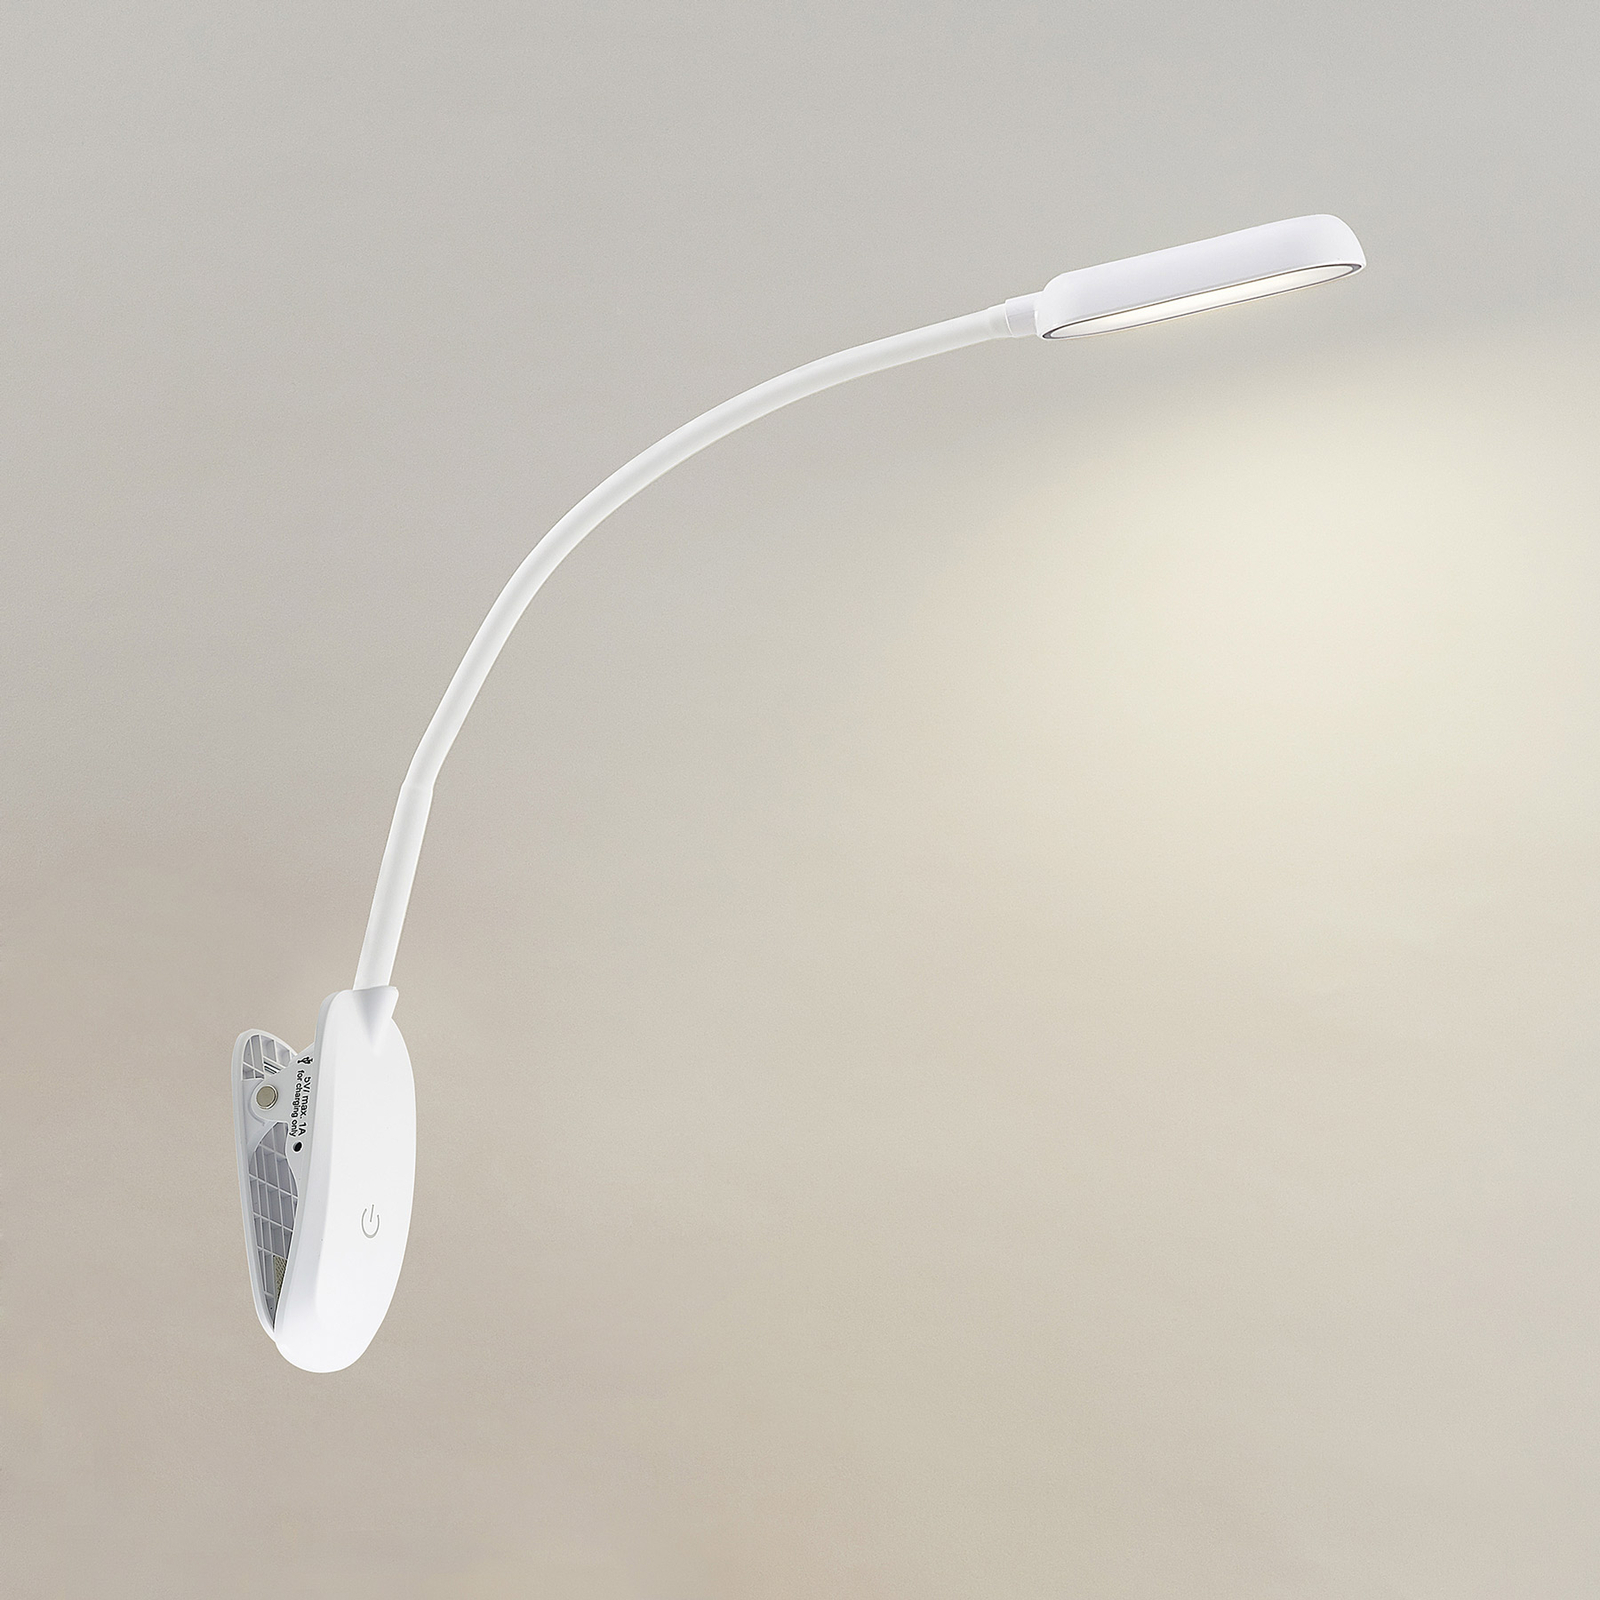 Lampa z klipsem LED Najari, biała, akumulator, USB, 51 cm wysokości